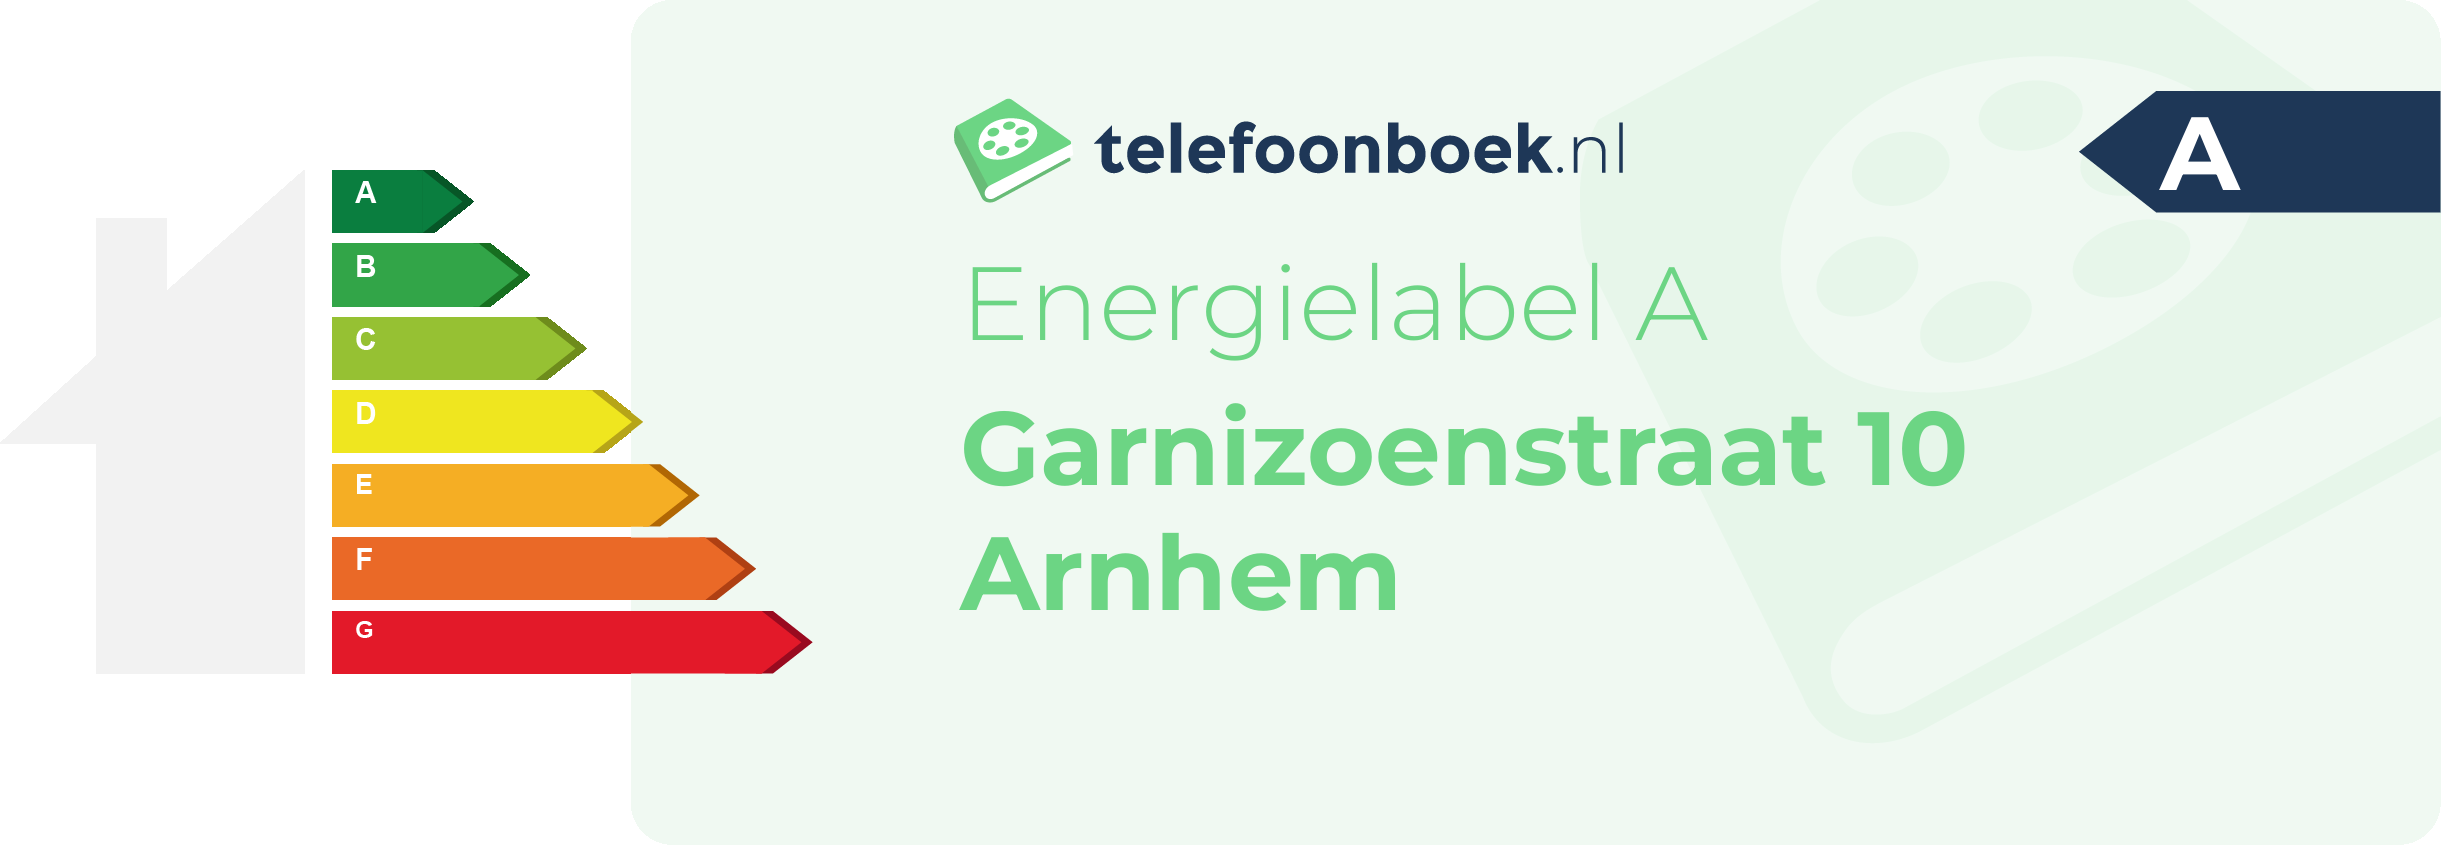 Energielabel Garnizoenstraat 10 Arnhem